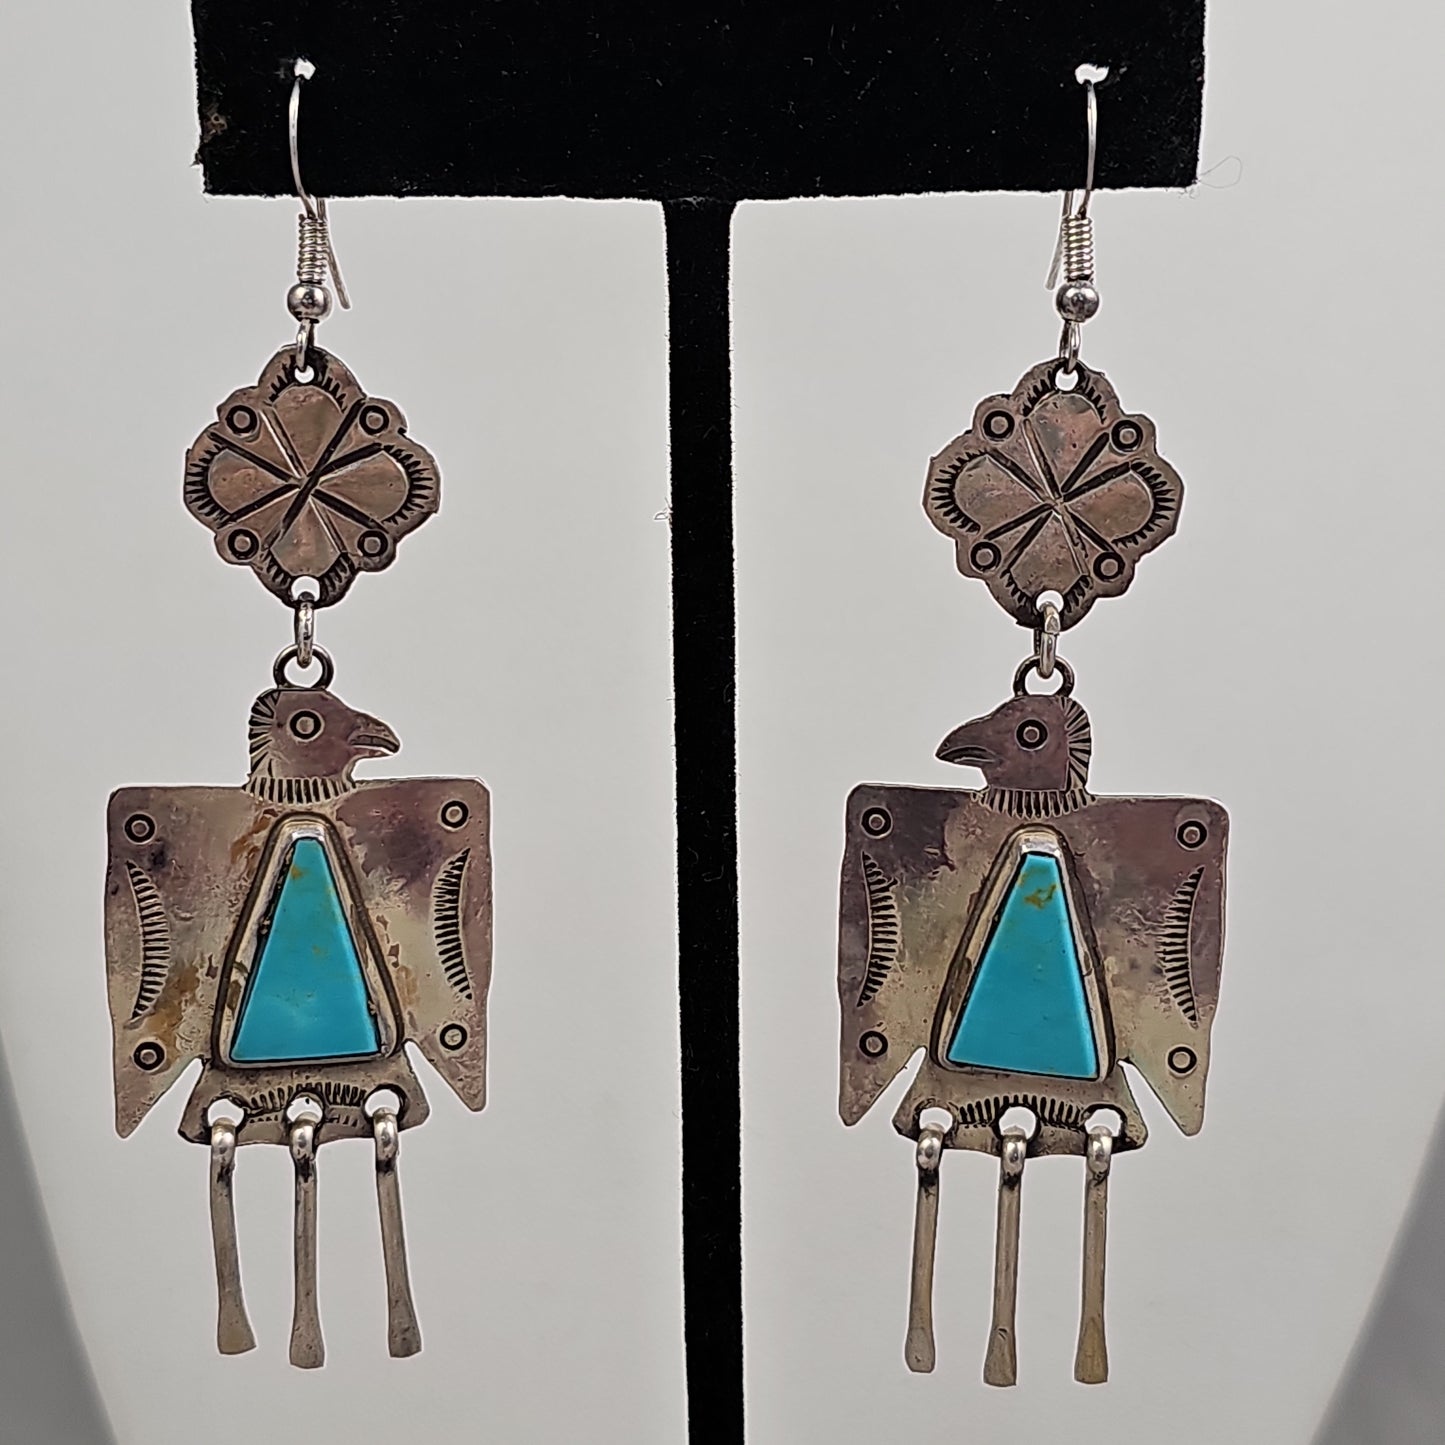 Thunderbird chandelier earrings